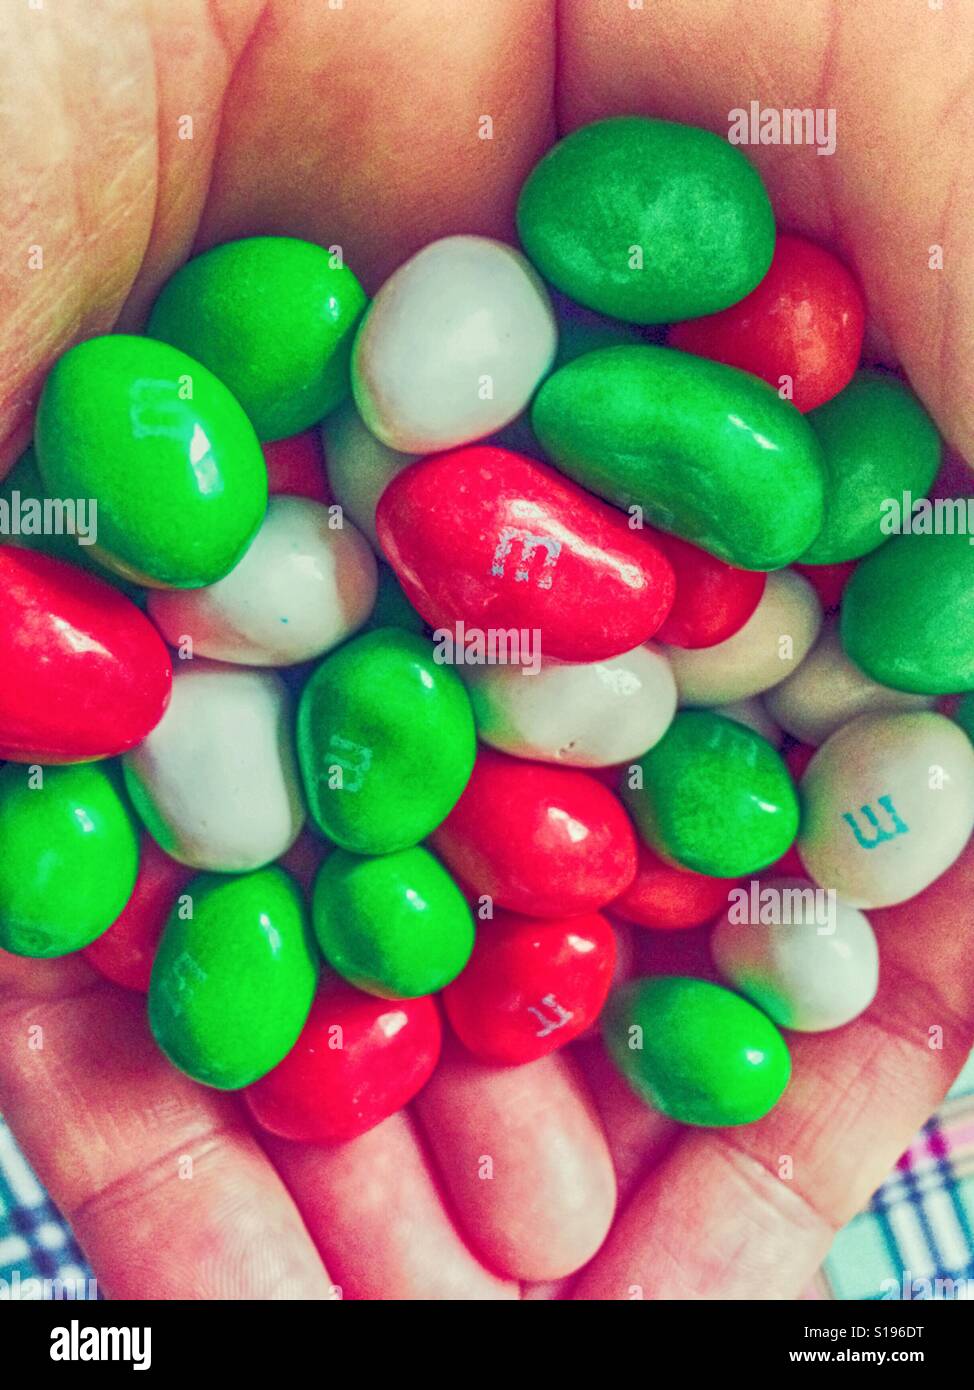 Un sacco di m&m s candy nelle mani della donna Foto Stock